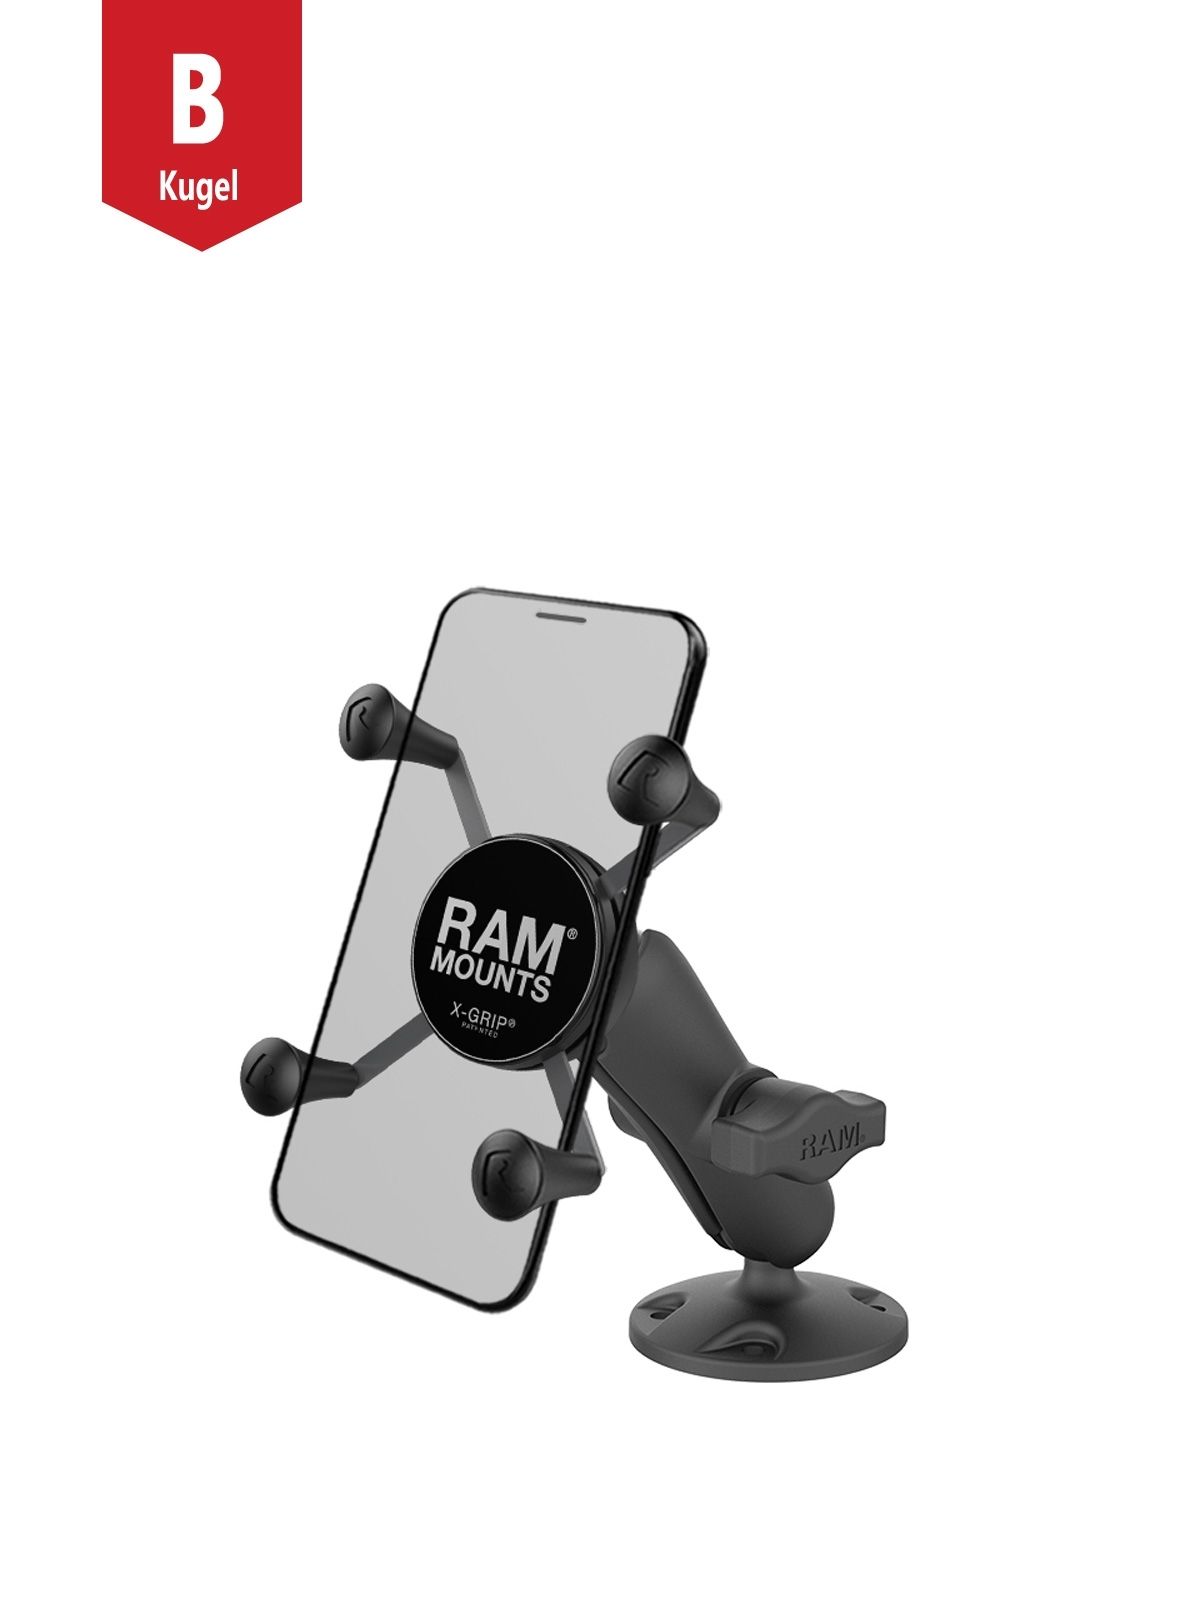 RAM Mounts Verbundstoff Aufbau-Halterung mit X-Grip Halteklammer für Smartphones bis 82,6 mm Breite - B-Kugel (1 Zoll), runde Basisplatte (AMPS), mittlerer Verbindungsarm